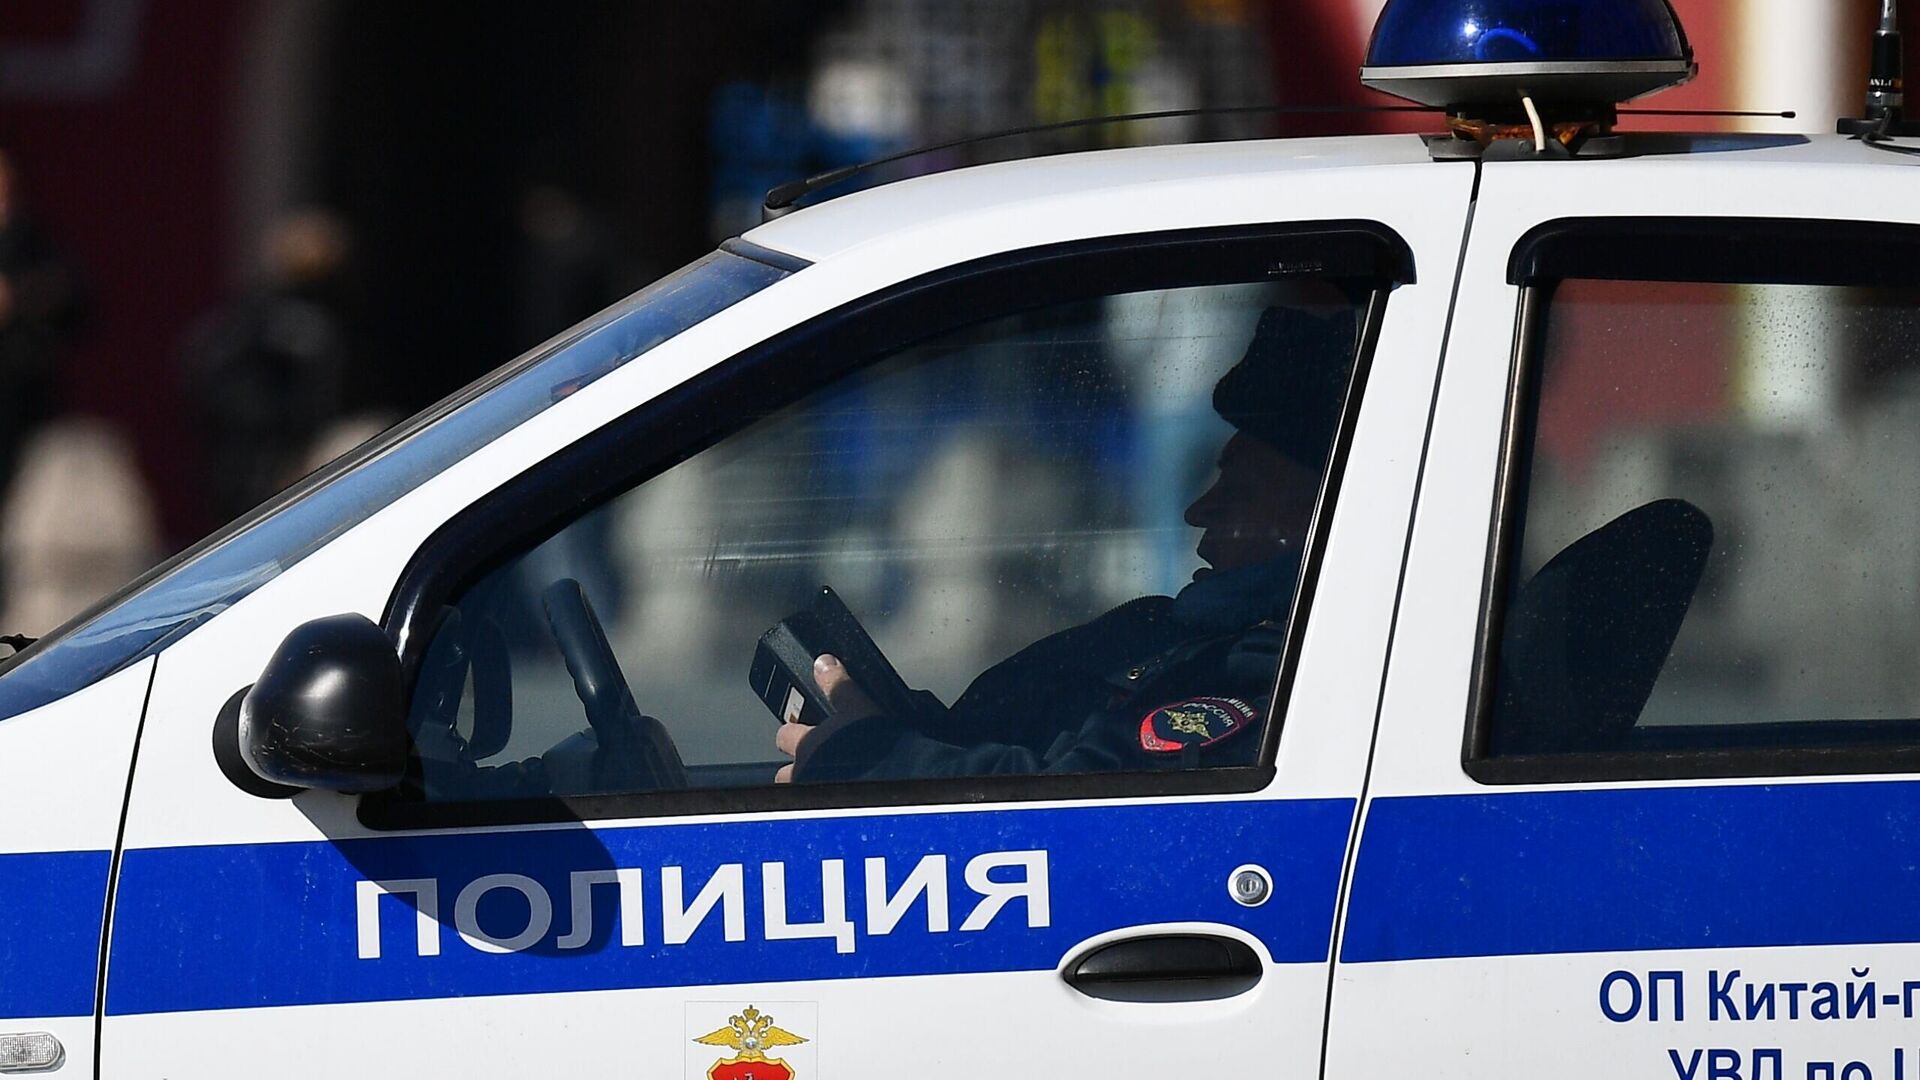 Налетчик в маске ворвался в московский банк, угрожая пистолетом